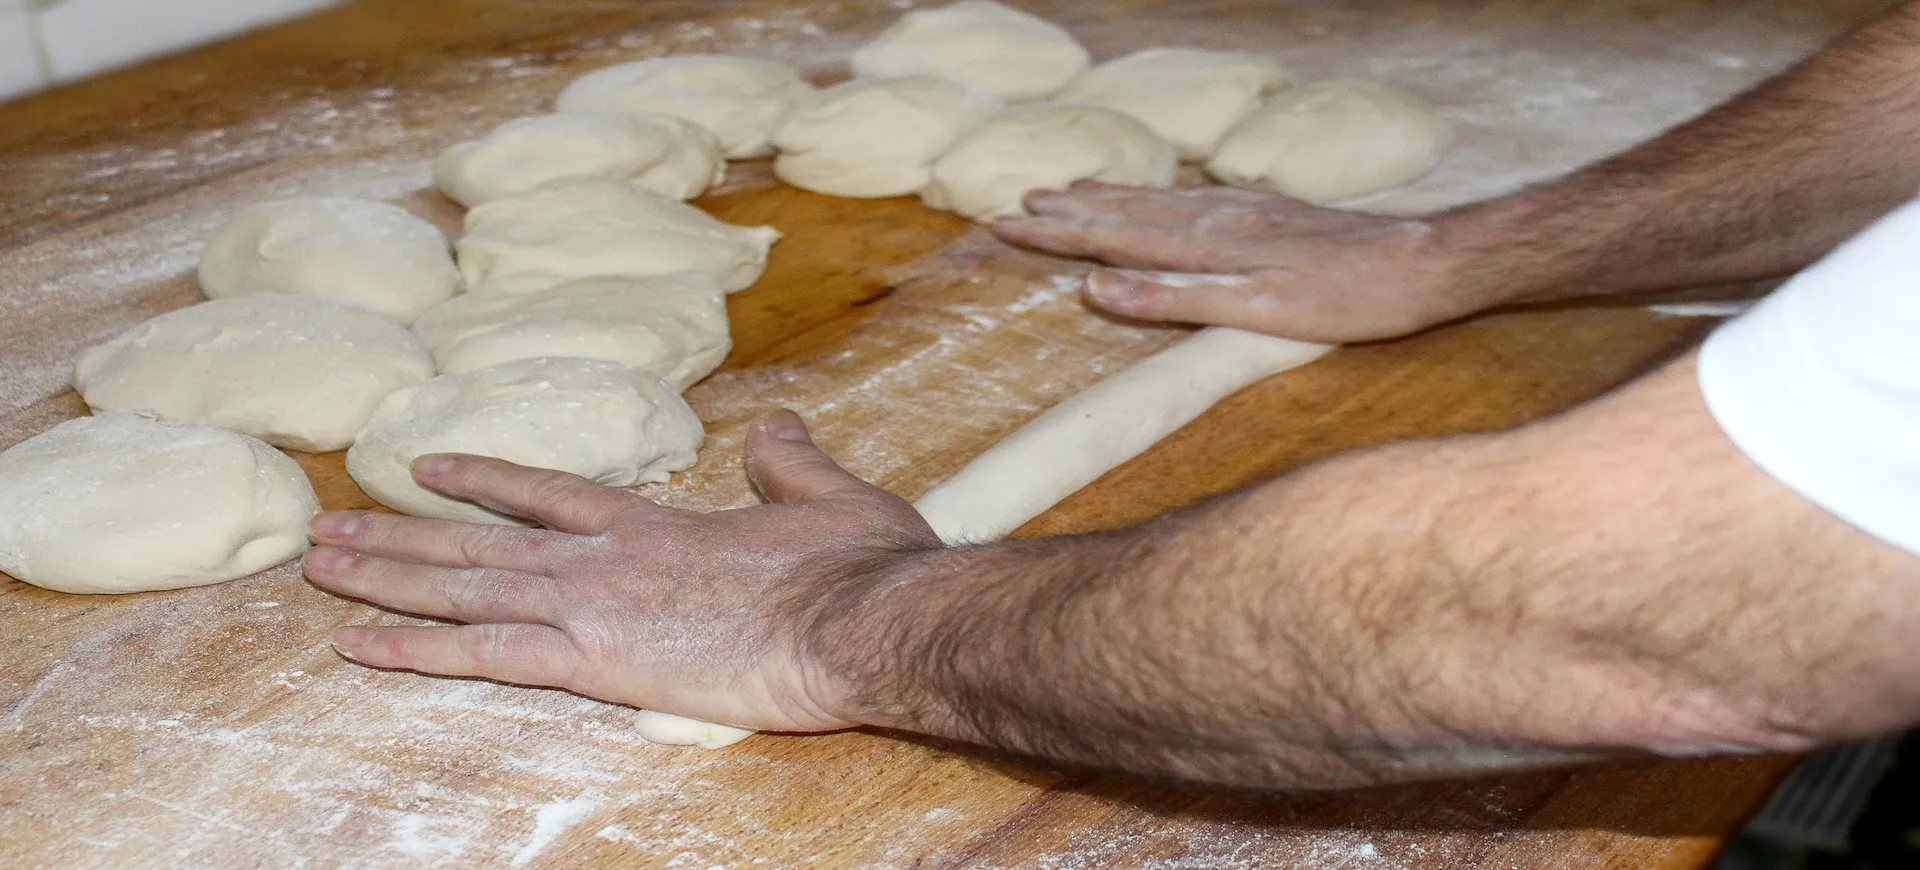 Panadero artesano amasando y dando forma a una barra de pan